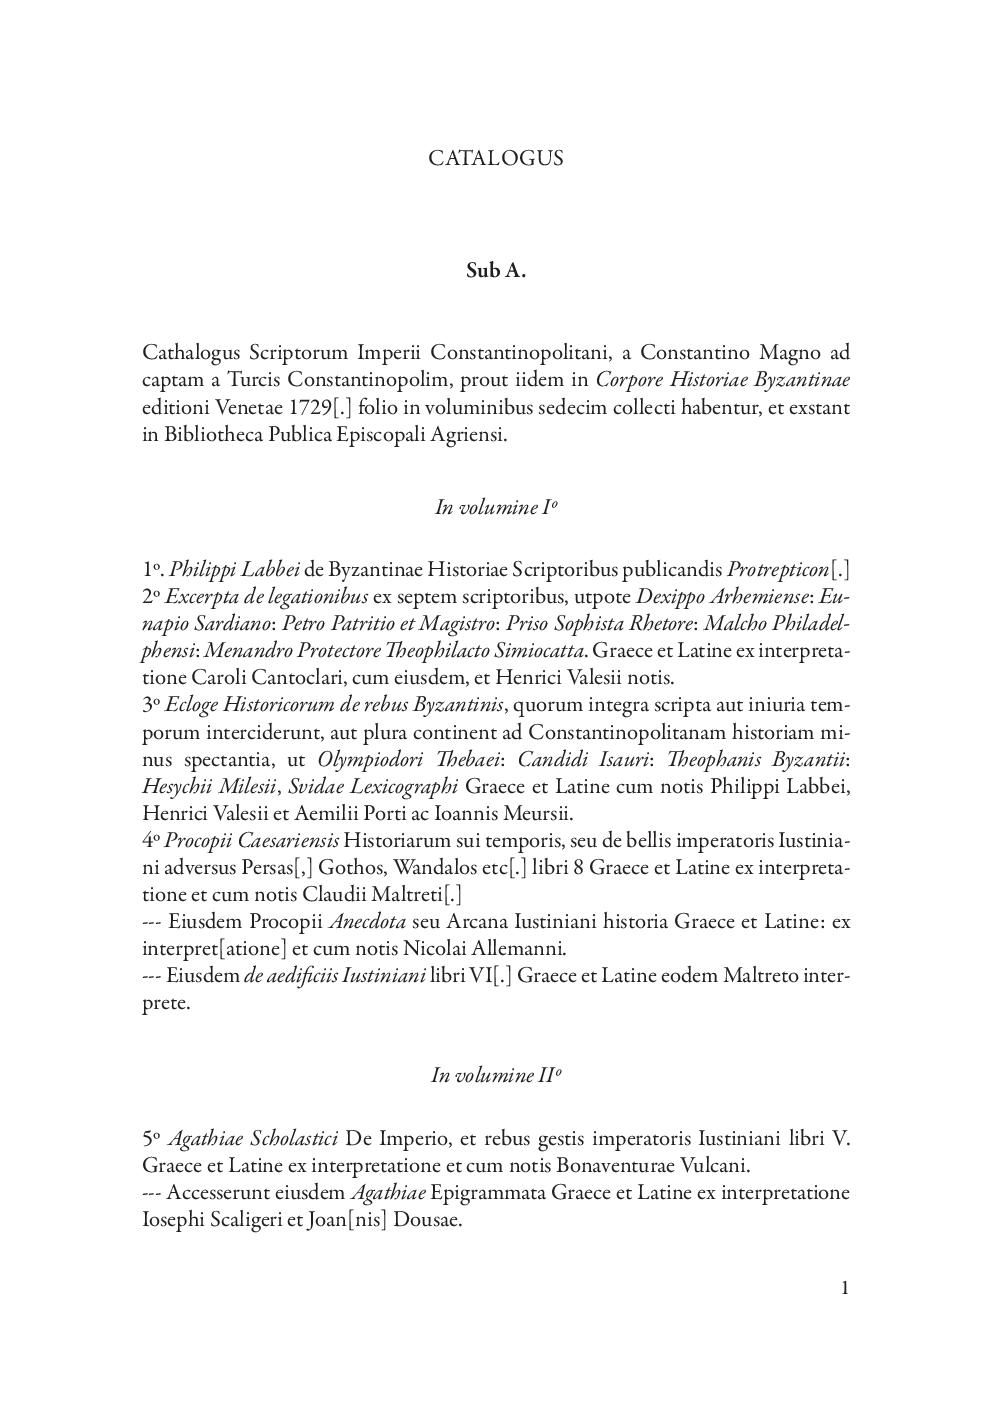 Büky József által Giuseppe Garampi számára 1785. június-júliusában összeállított jegyzéke Corpus Byzantinum Egerben meglévő köteteinek tartalmáról